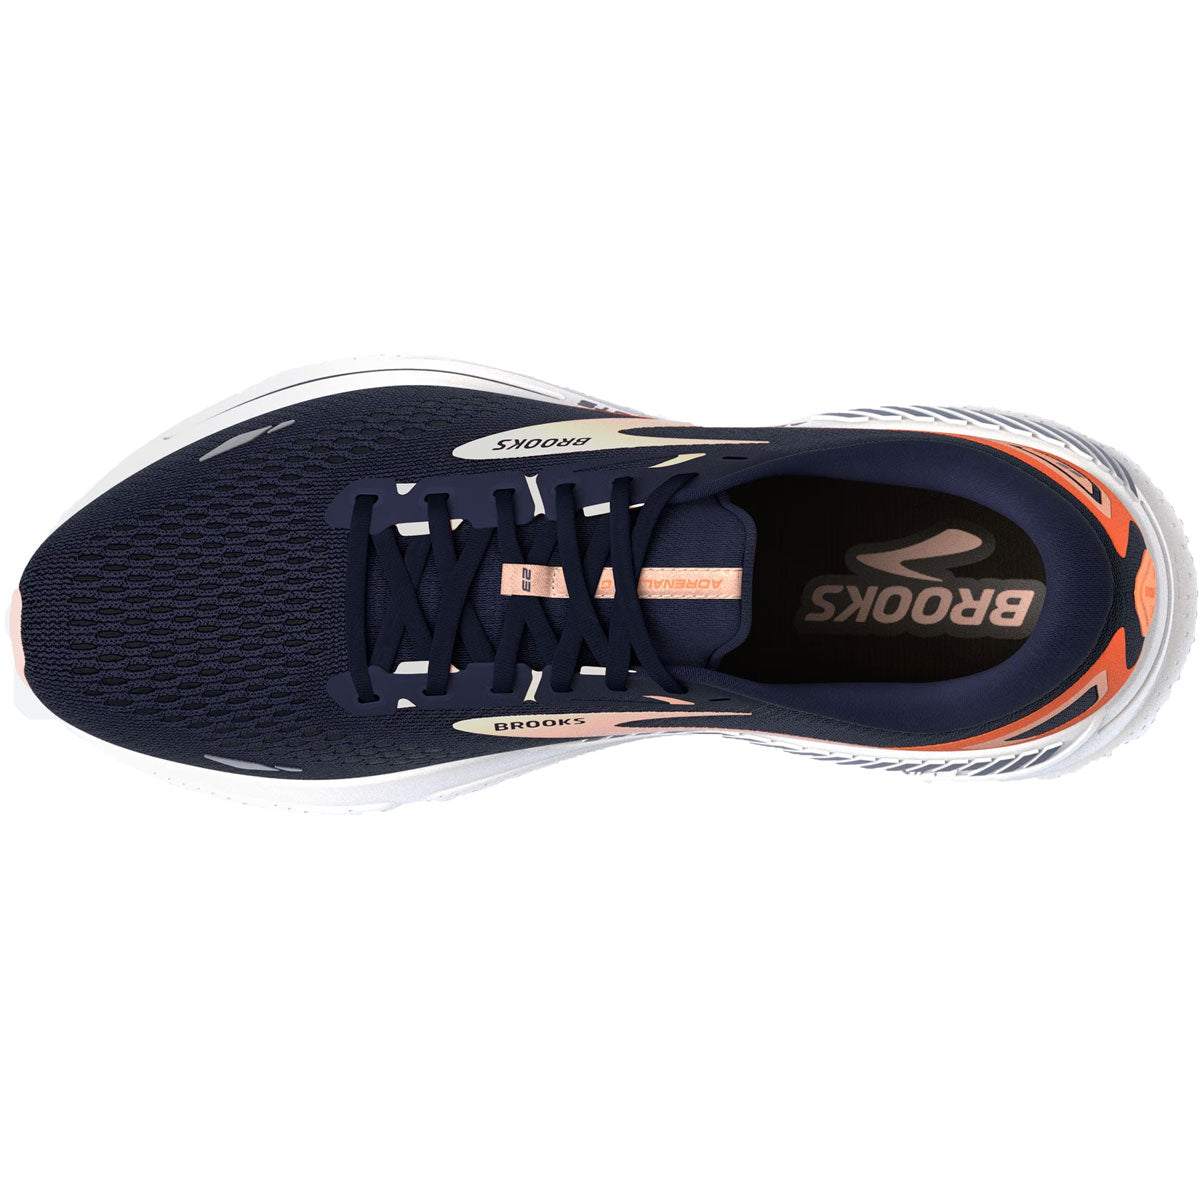 Brooks Adrenaline GTS 23 Running Shoes - Womens - Peacoat/Tangerine/Peach